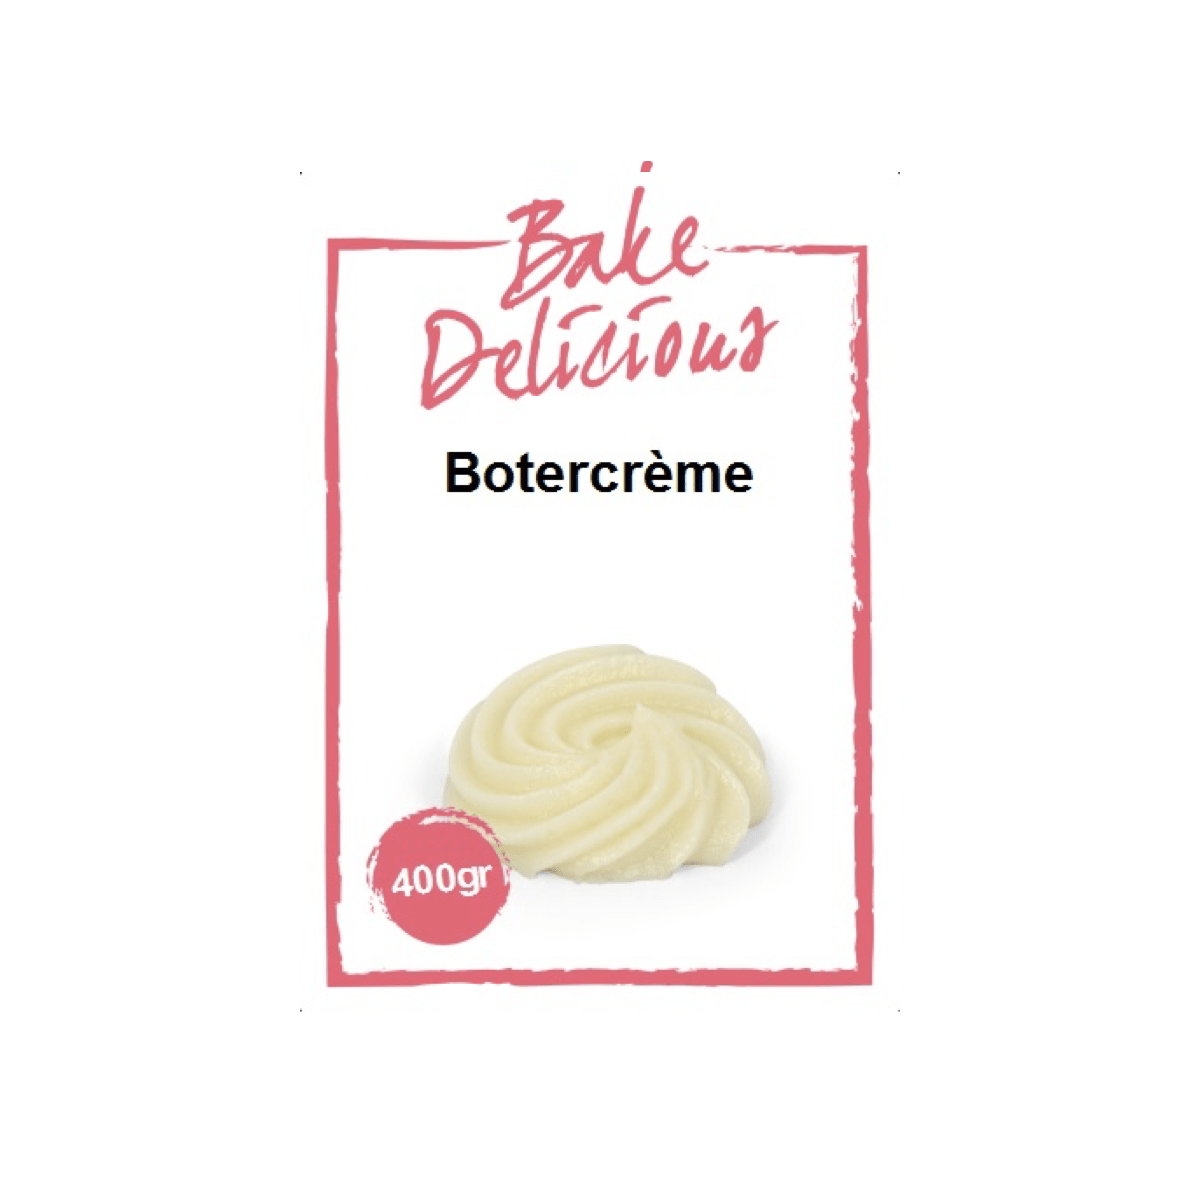 Bake Delicious Botercreme - 400g